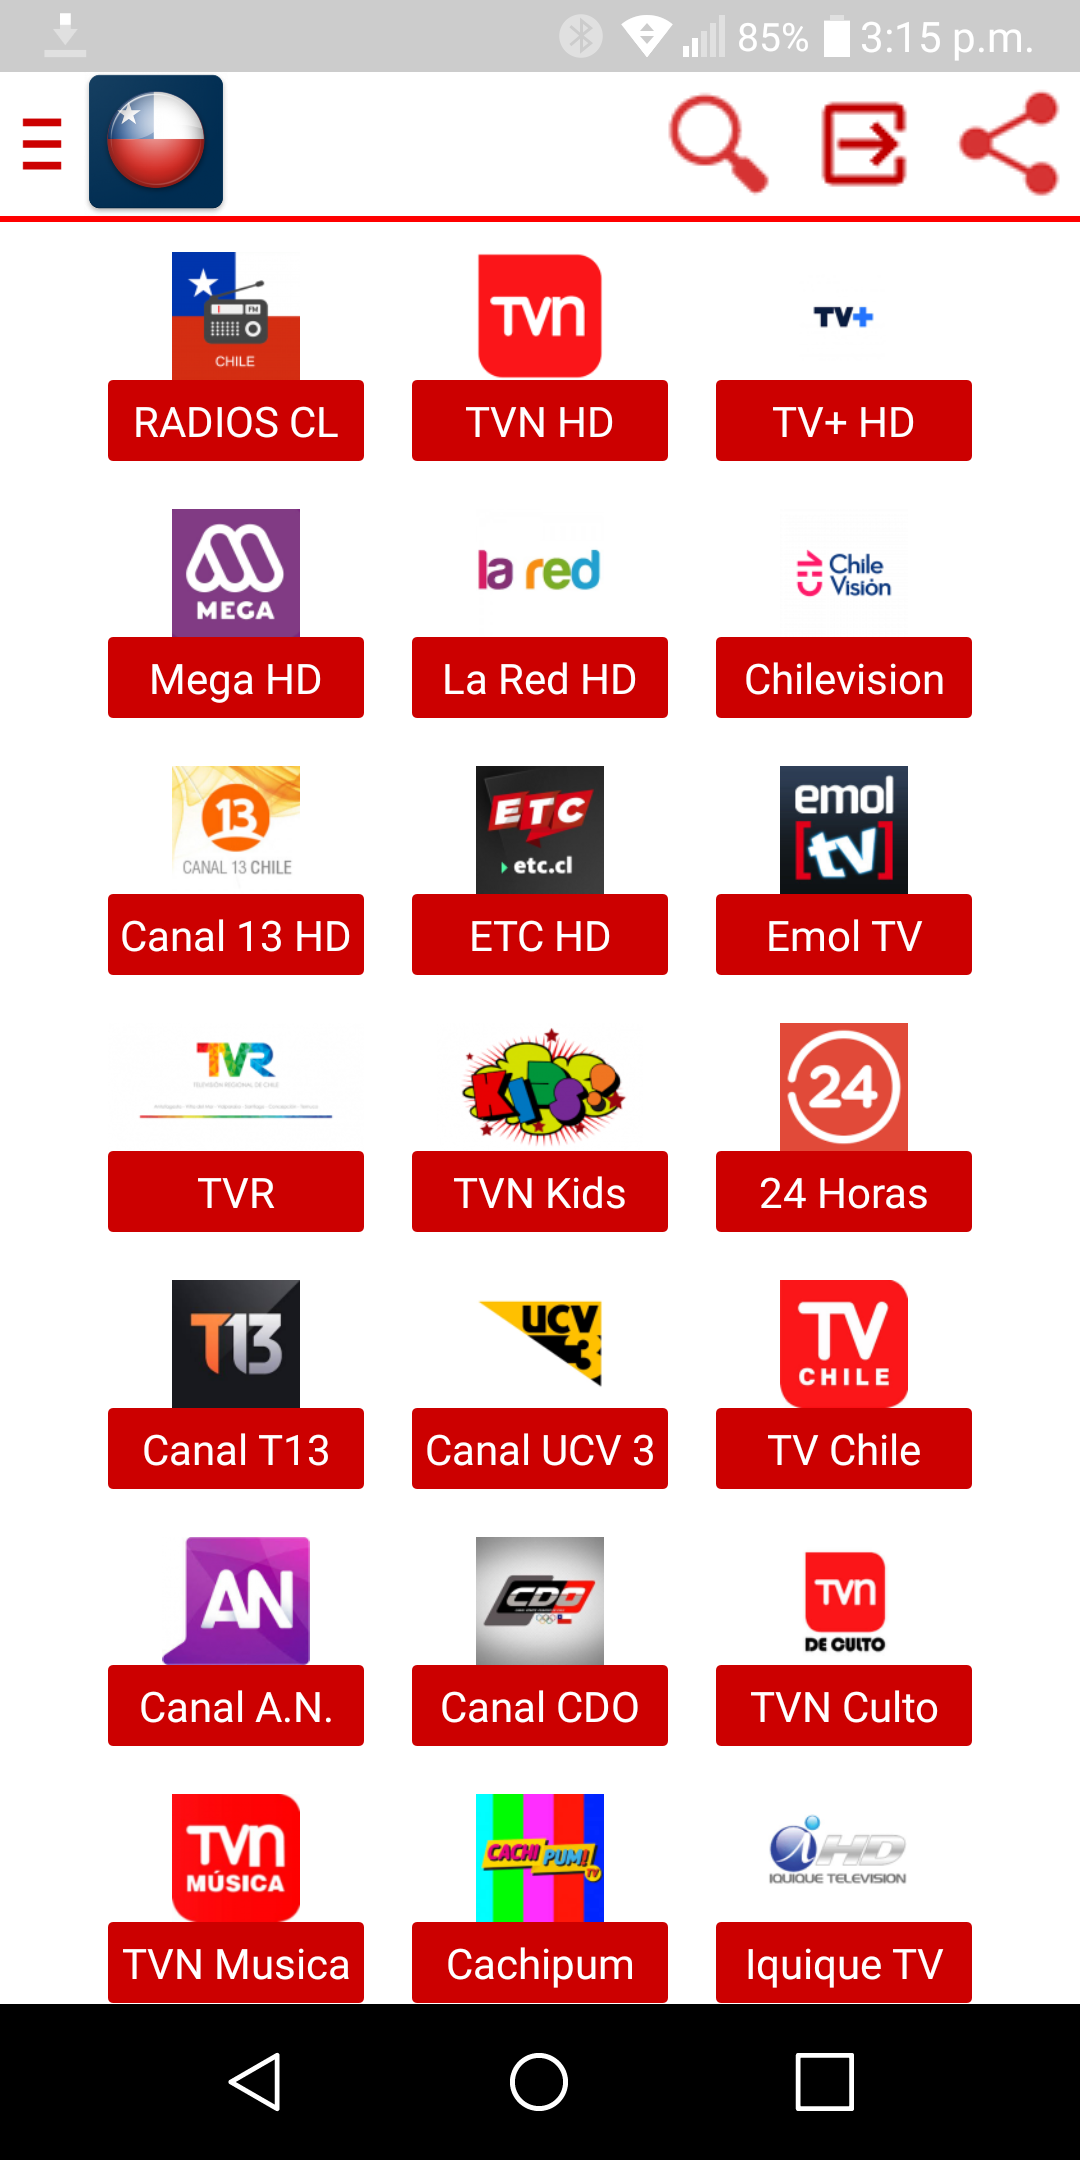 TV de Chile en Vivo APK 9.5 Download for Android – Download TV de Chile